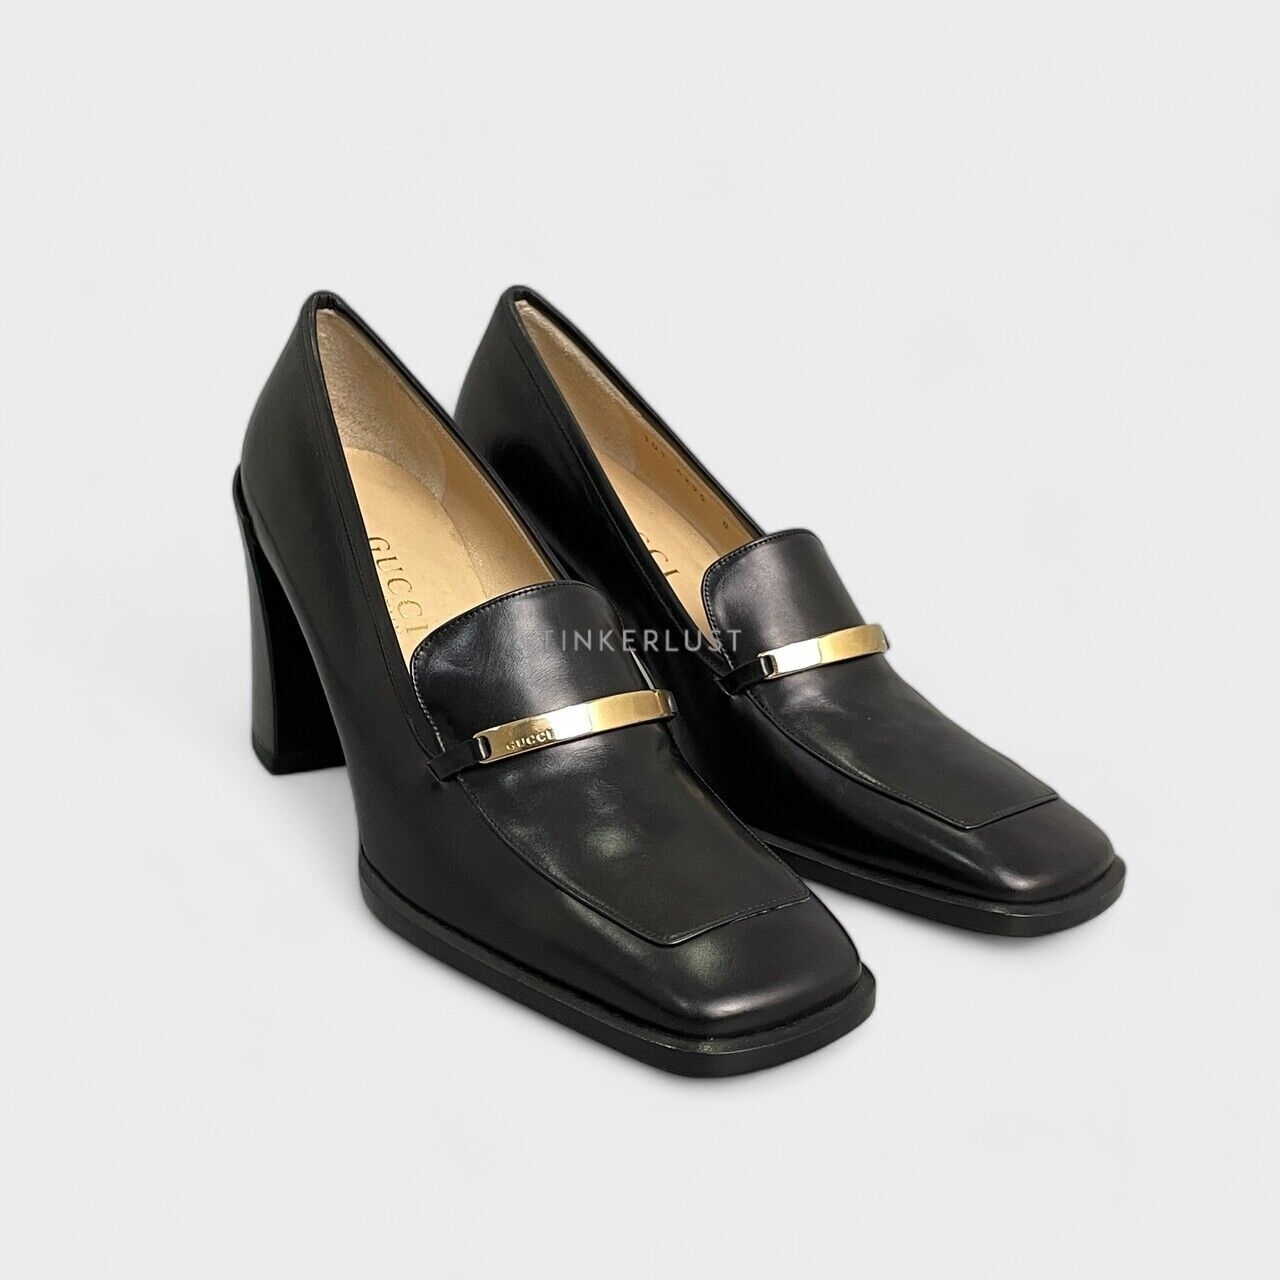 Gucci Vintage Black Pumps Heels Loafers